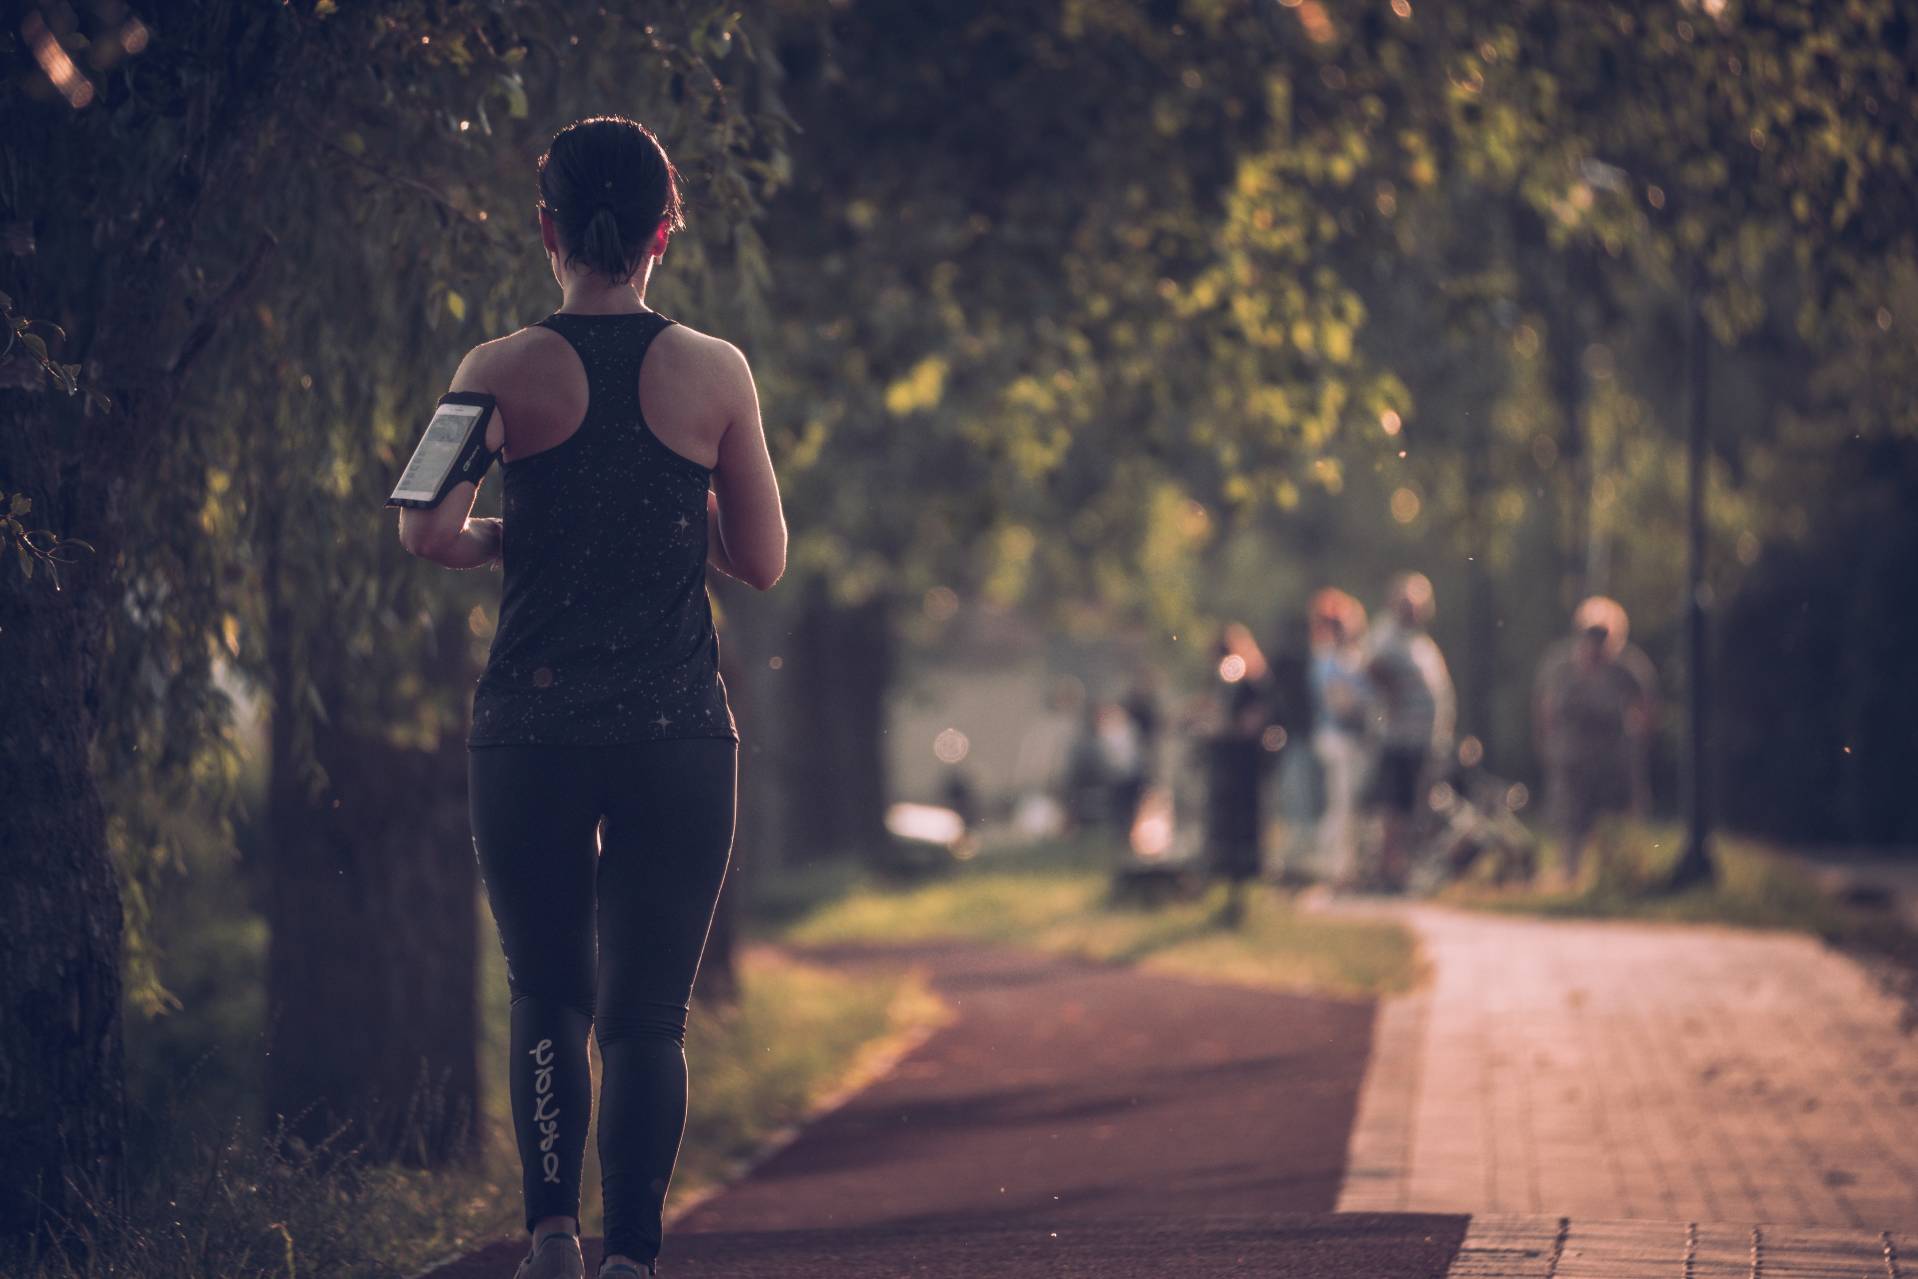 Τρέξιμο: Τα οφέλη του και πρακτικές συμβουλές για τους αρχάριους